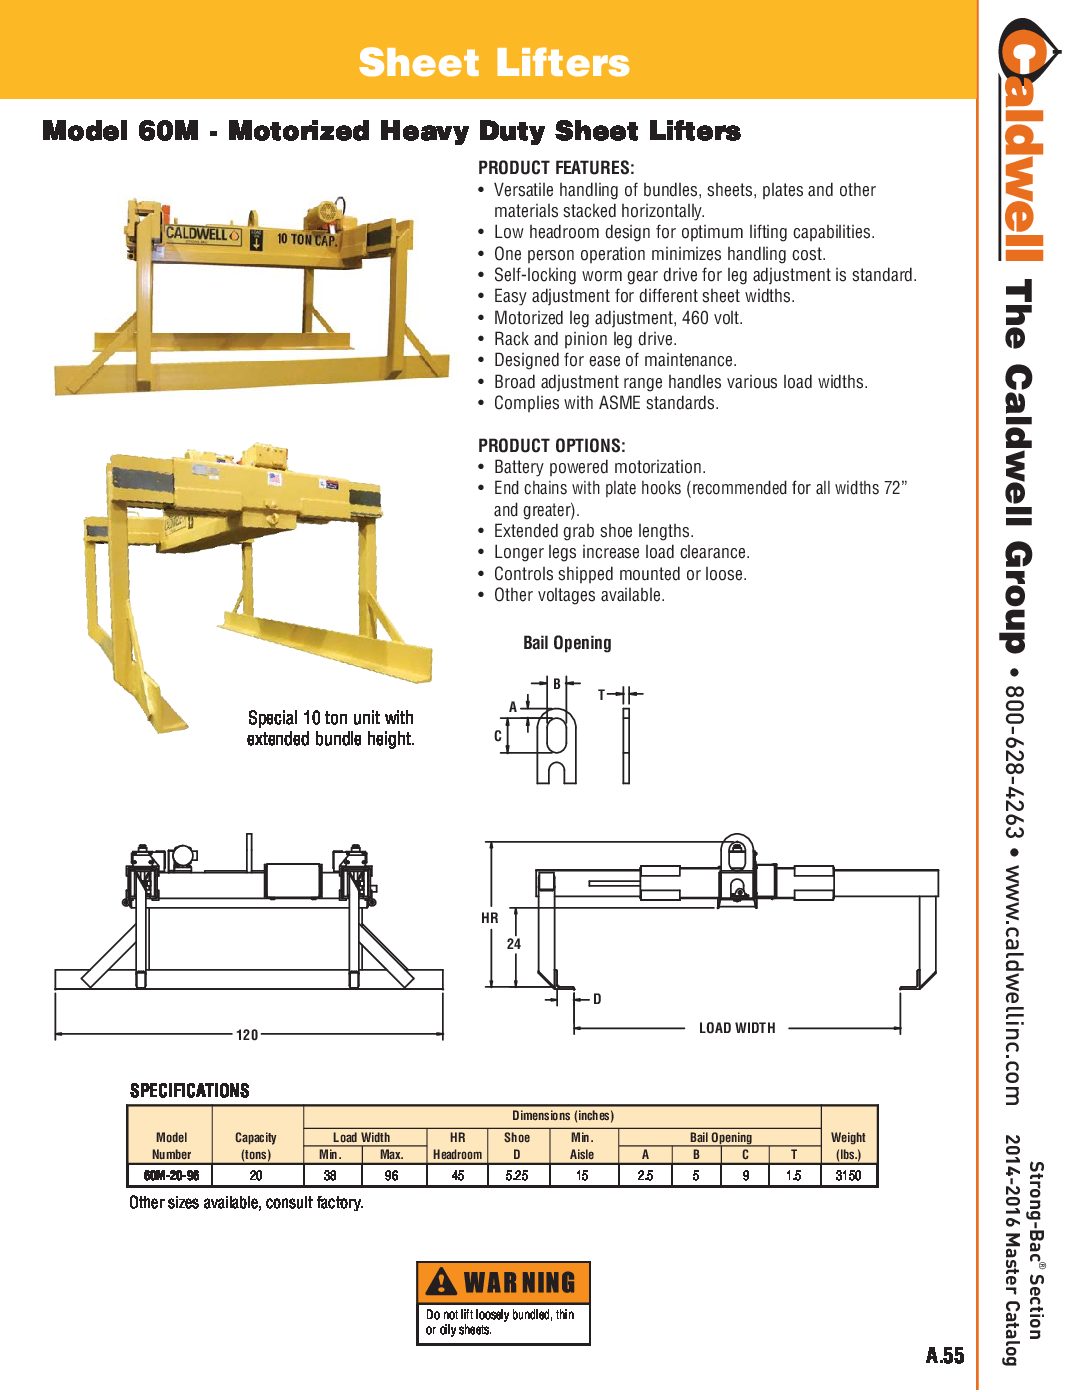 Caldwell STRONG BAC Heavy Duty Hydraulic Sheet Lifter Spread Sheet pdf